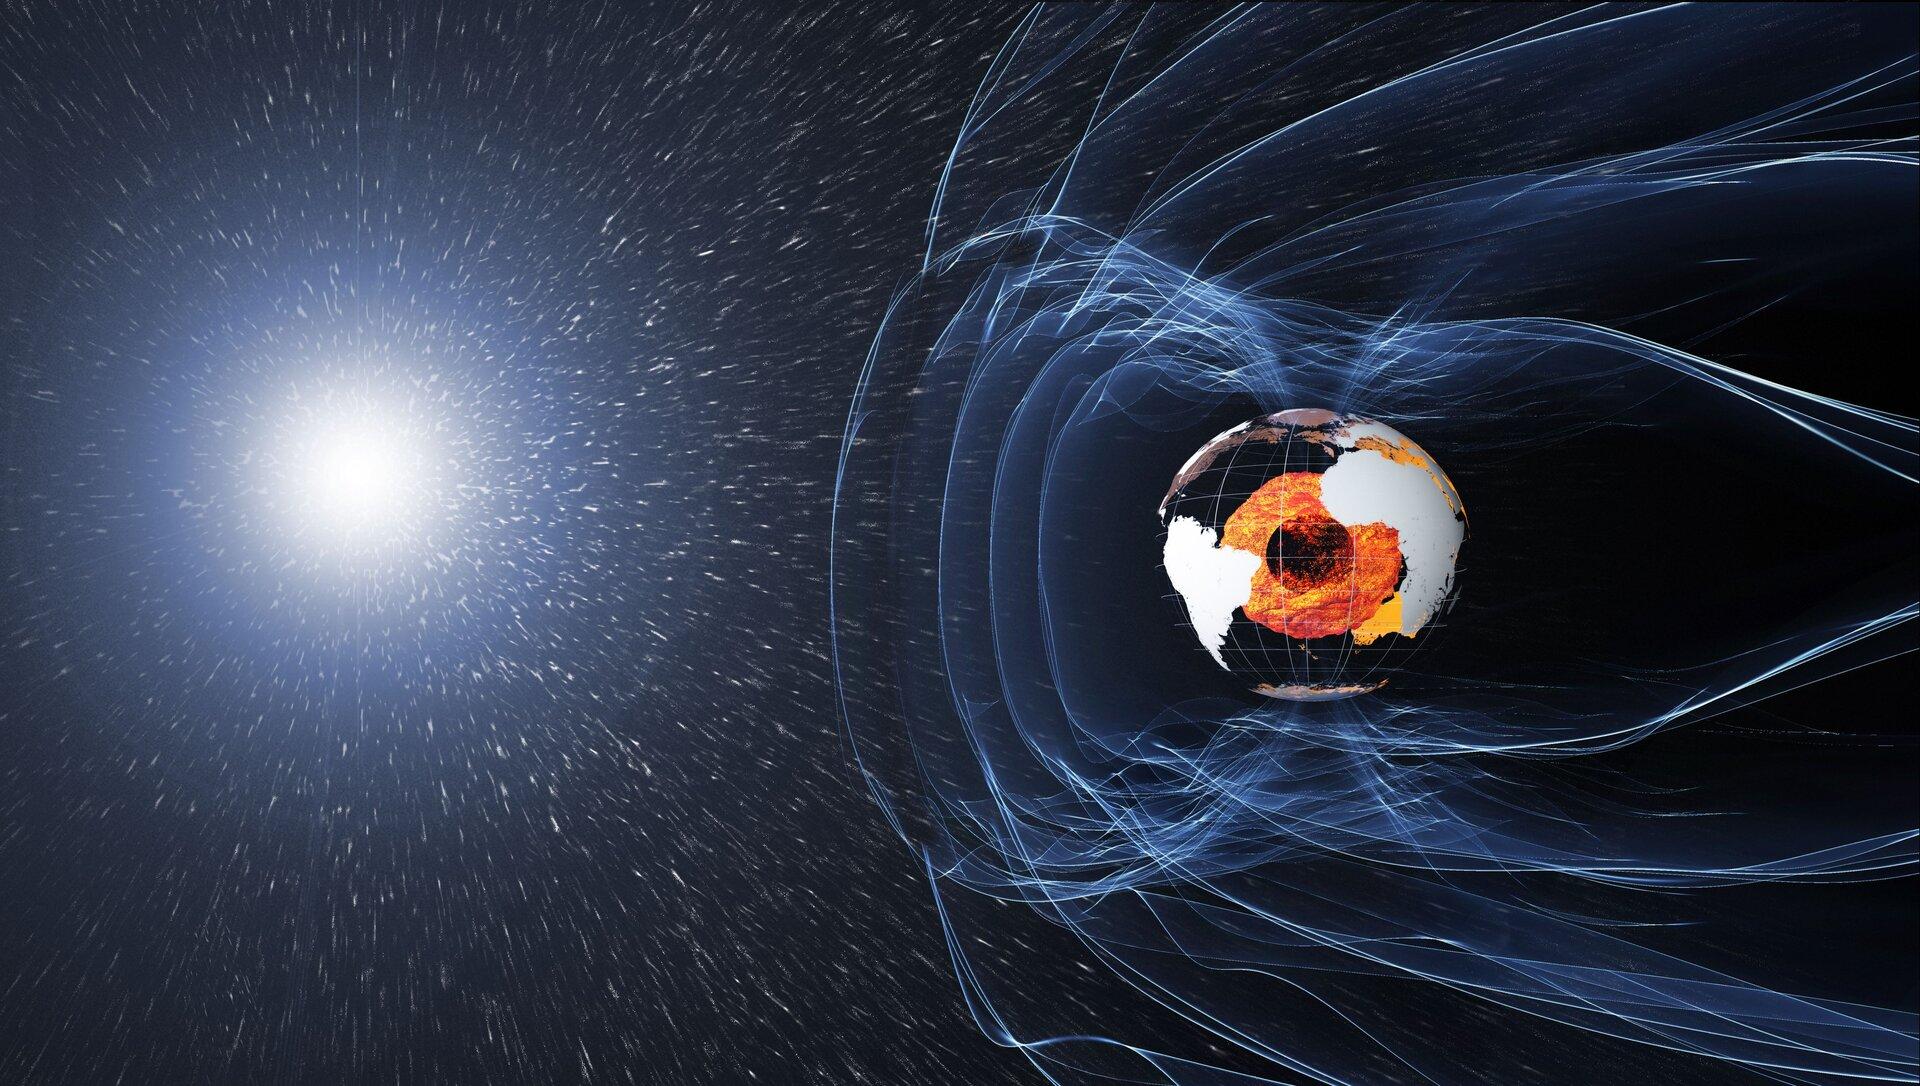 Le champ magnétique et les courants électriques dans et autour de la Terre génèrent des forces complexes qui ont un impact incommensurable sur la vie quotidienne. Ce champ peut être vu comme une énorme bulle protégeant la planète du rayonnement cosmique et des particules chargées qui la bombardent grâce aux vents solaires. [Swarm/ESA - ATG medialab]